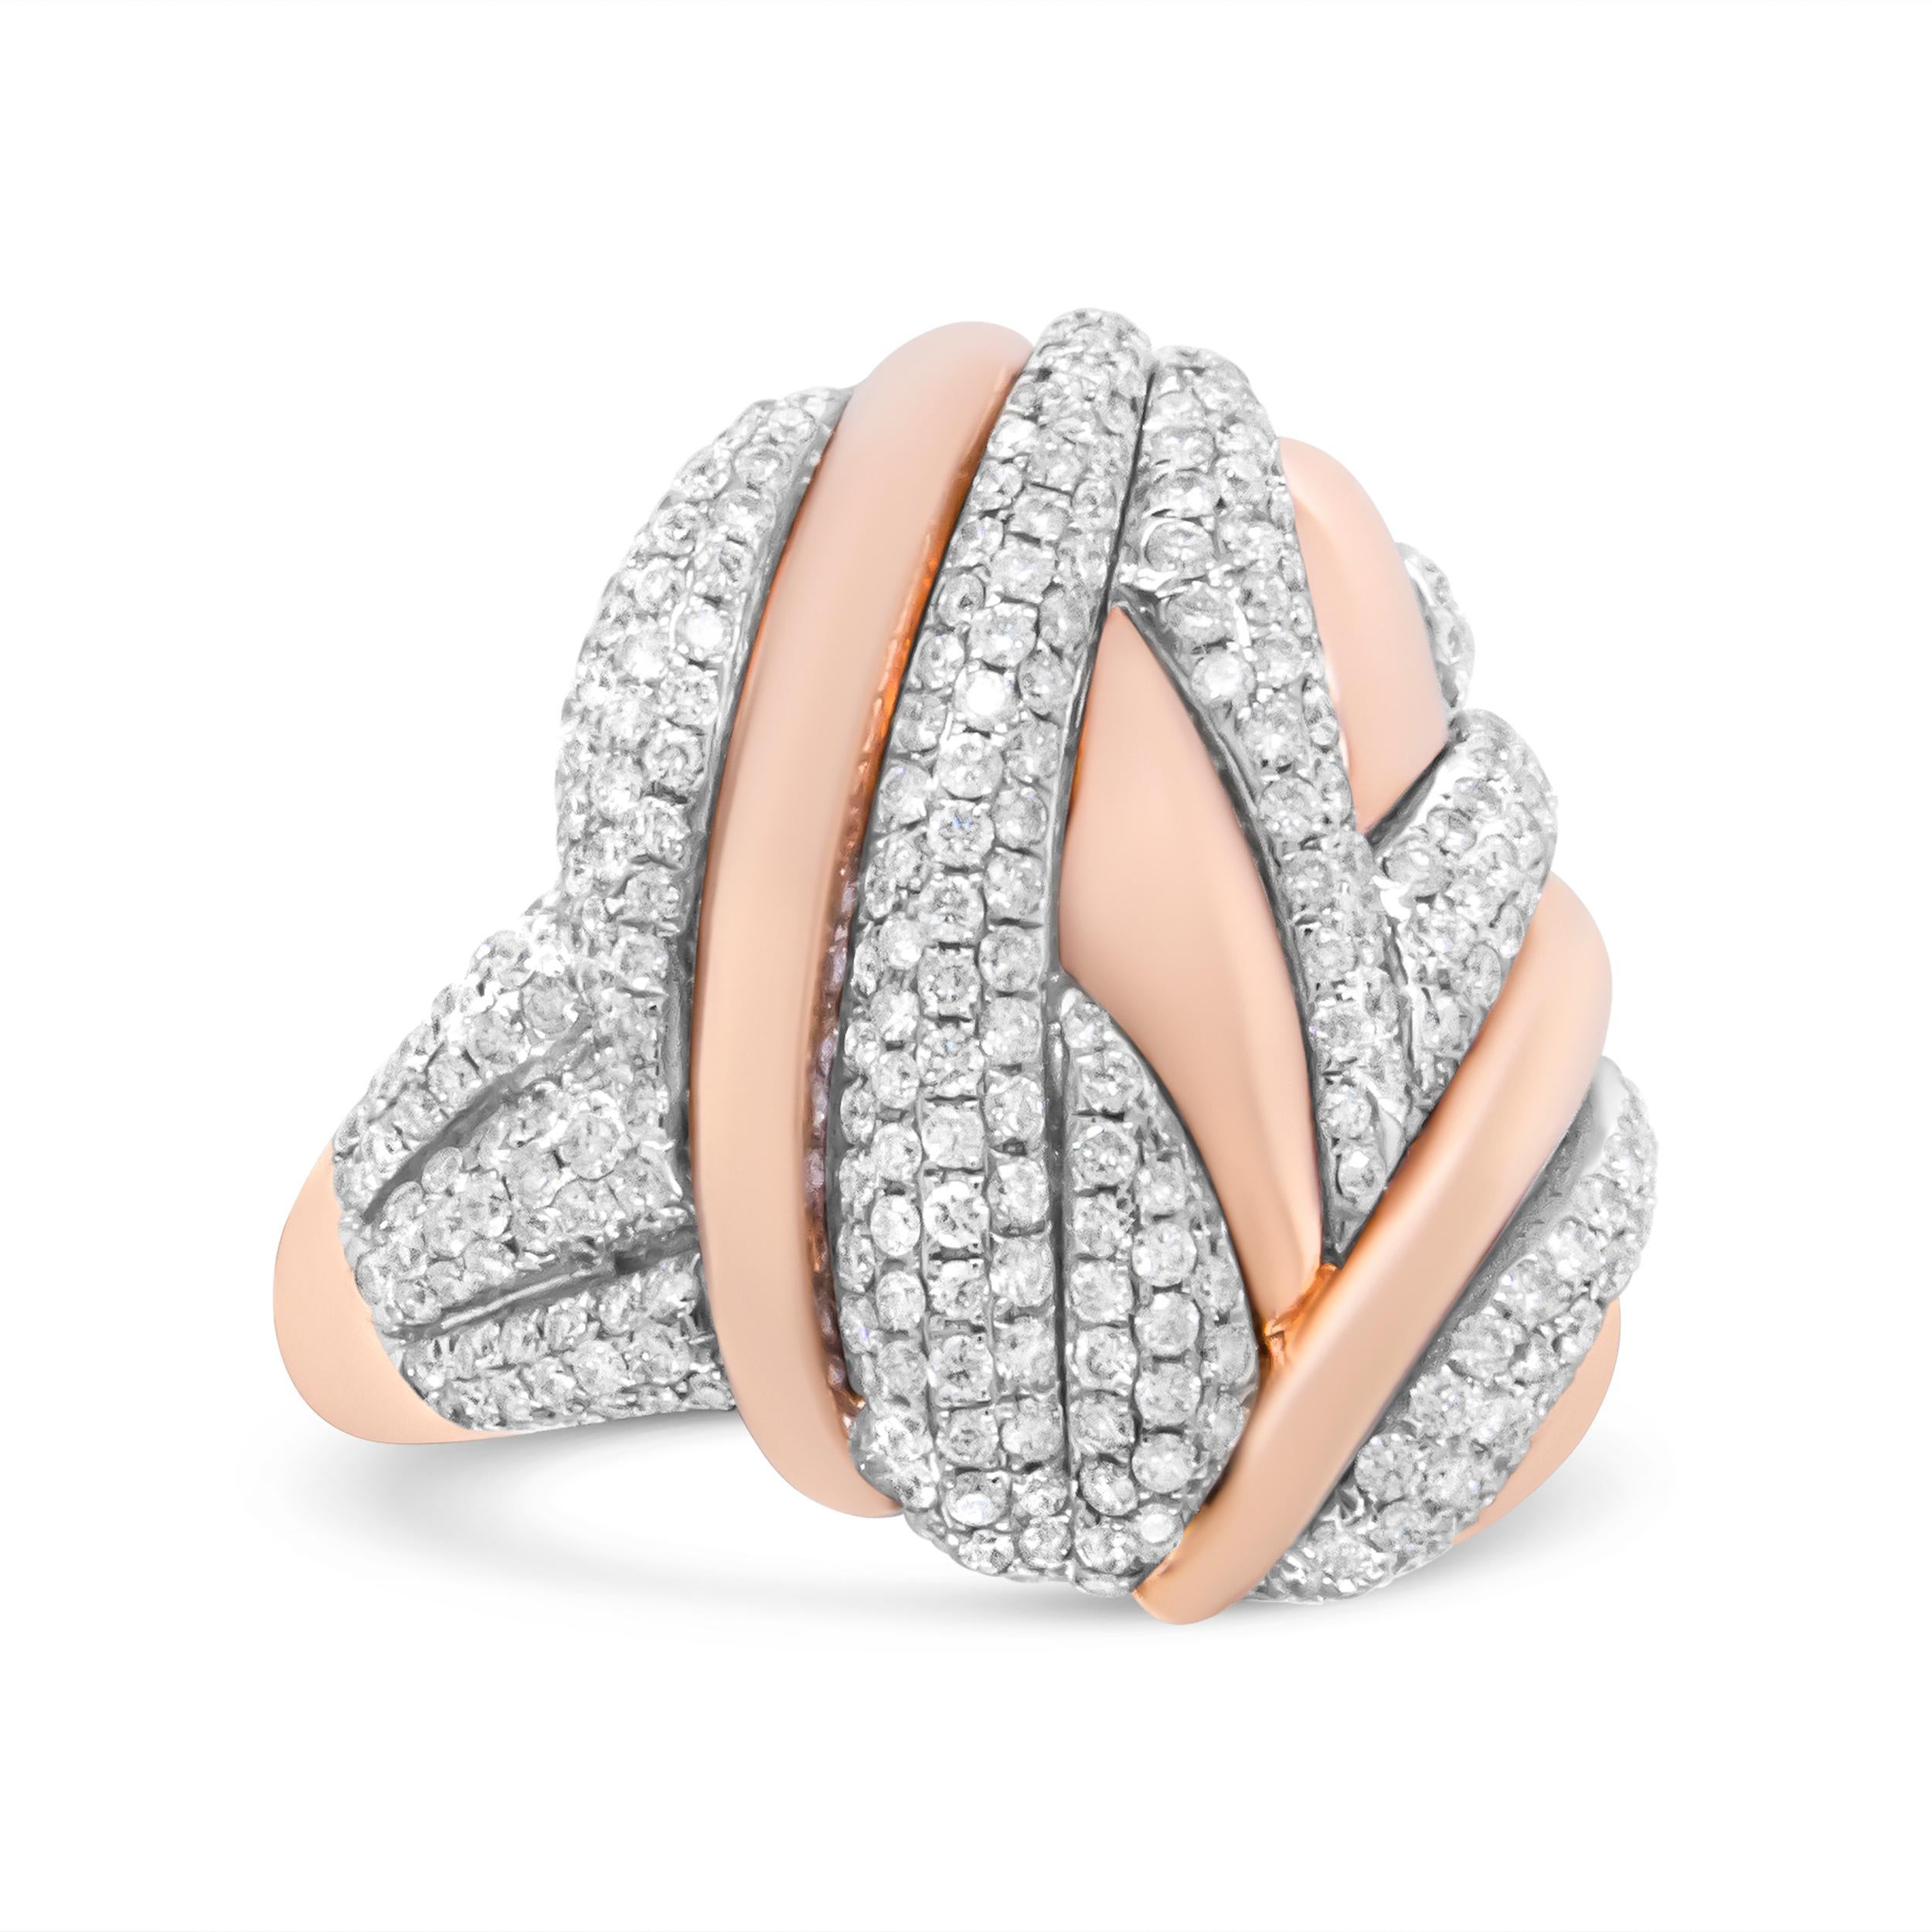 Dieser moderne und luxuriöse ovale Ring im Bypass-Design ist die Ergänzung Ihrer Schmucksammlung, die Sie schon immer gesucht haben. Der Ring ist aus tiefem 18-karätigem Roségold gefertigt und mit Streifen von Diamanten aus natürlichem Weißgold